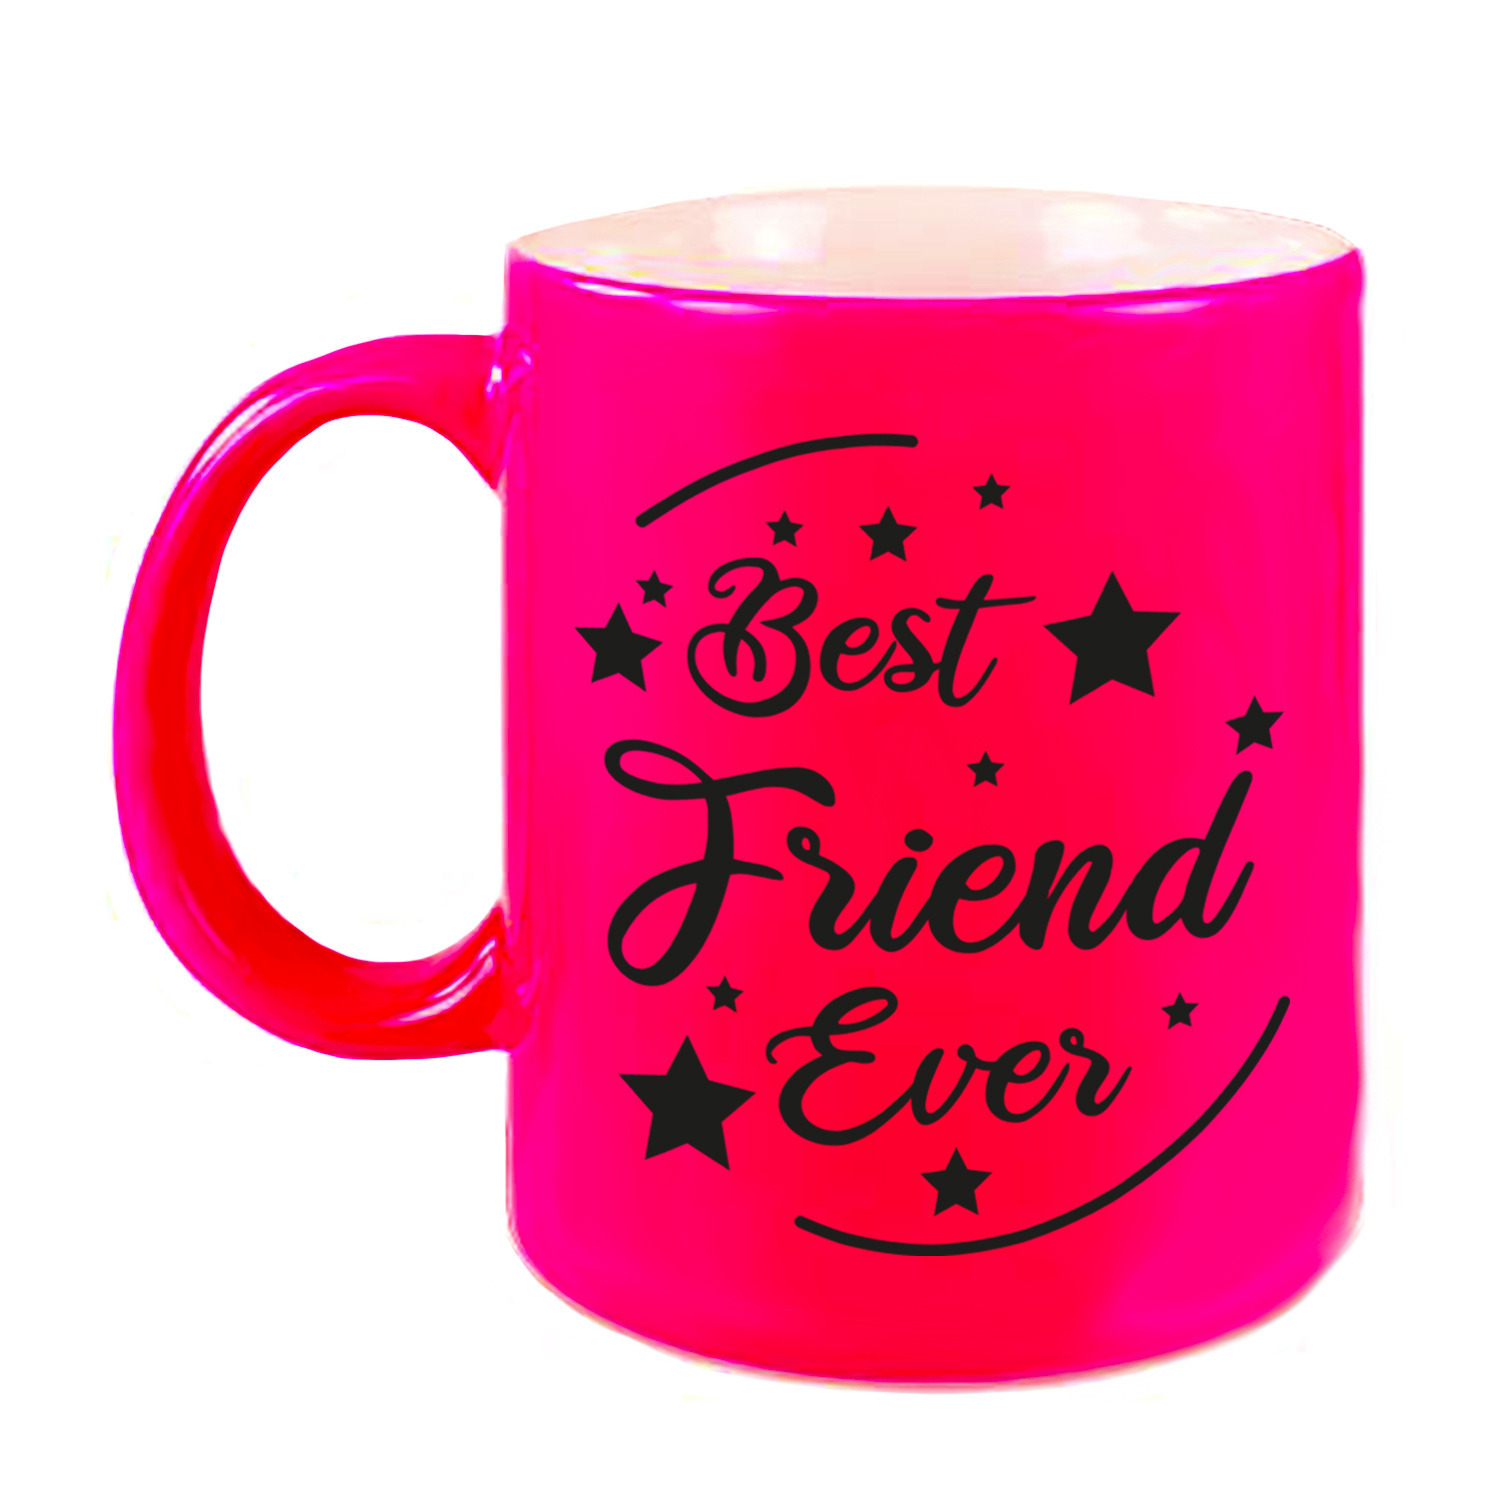 Best Friend Ever cadeau mok-beker neon roze 330 ml